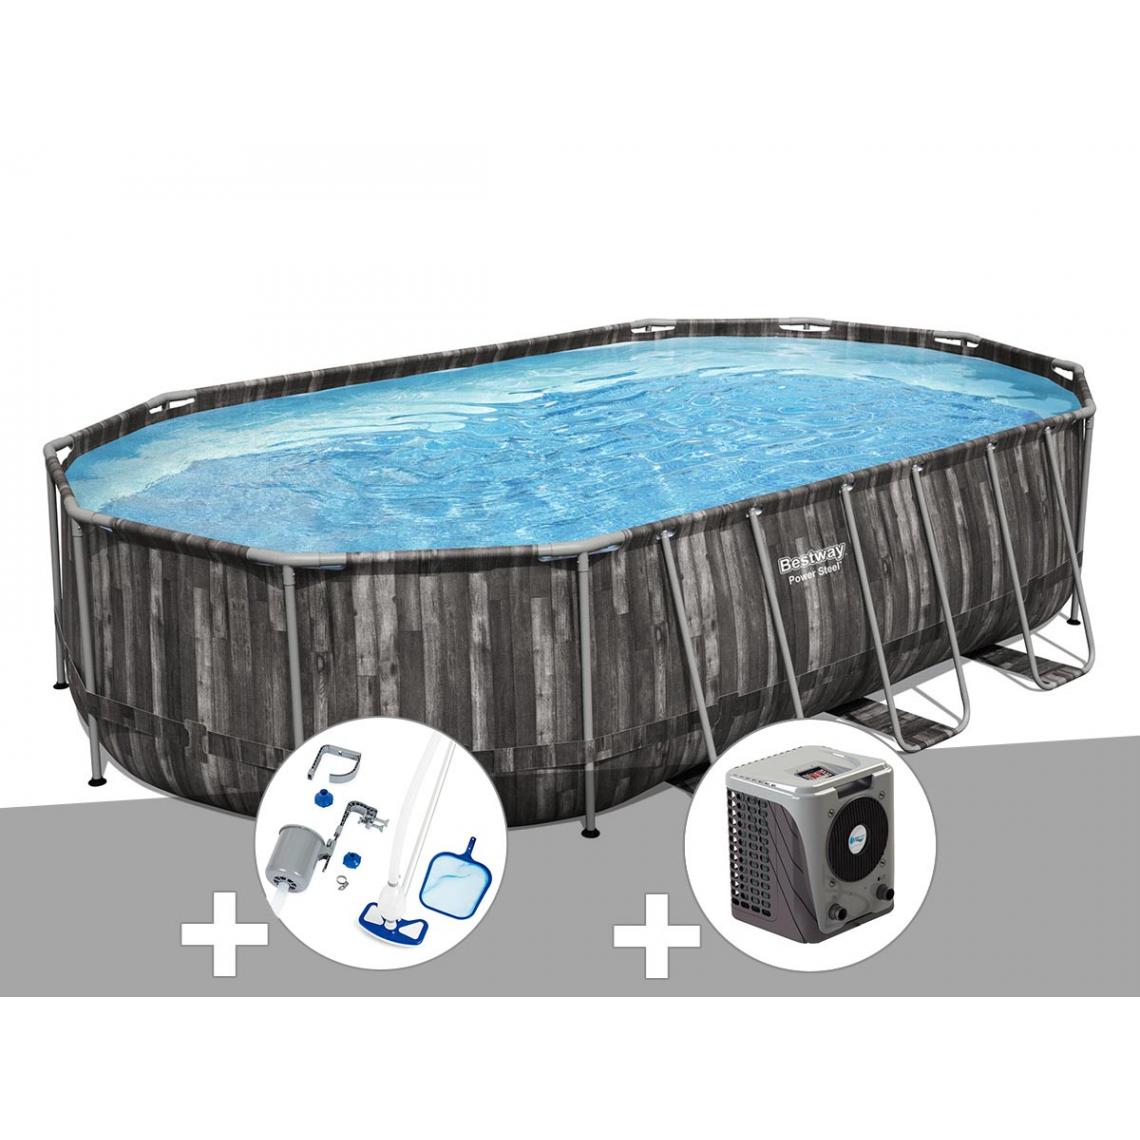 Bestway - Kit piscine tubulaire ovale Bestway Power Steel décor bois 6,10 x 3,66 x 1,22 m + Kit d'entretien Deluxe + Pompe à chaleur - Piscine Tubulaire